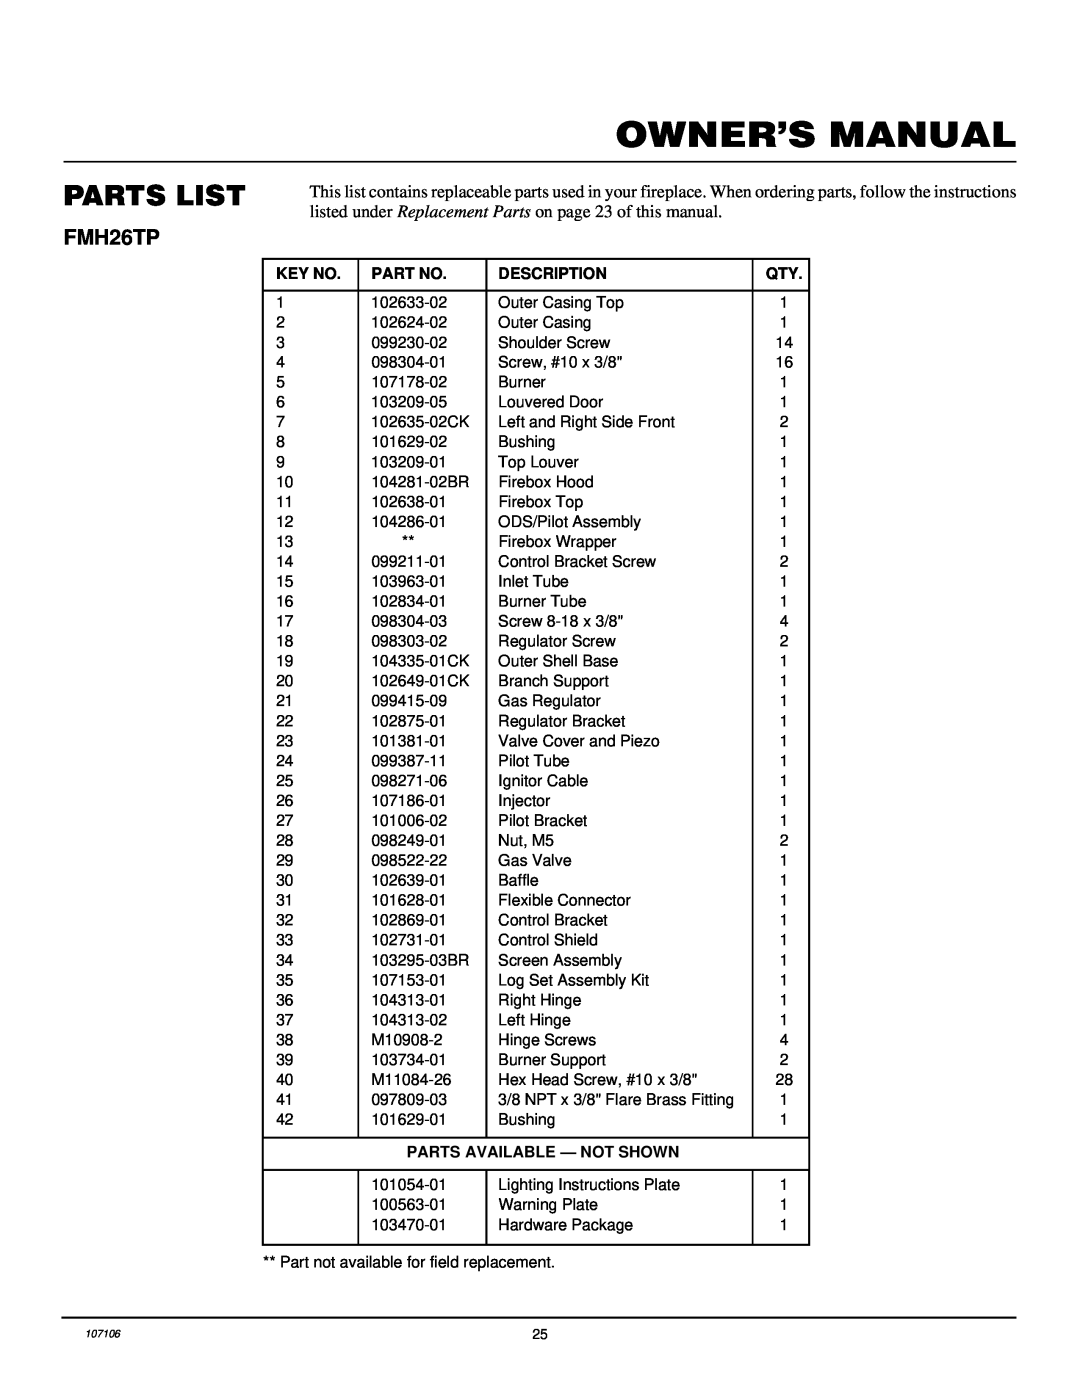 FMI FMH26TP installation manual Parts List, Description, Parts Available - Not Shown 